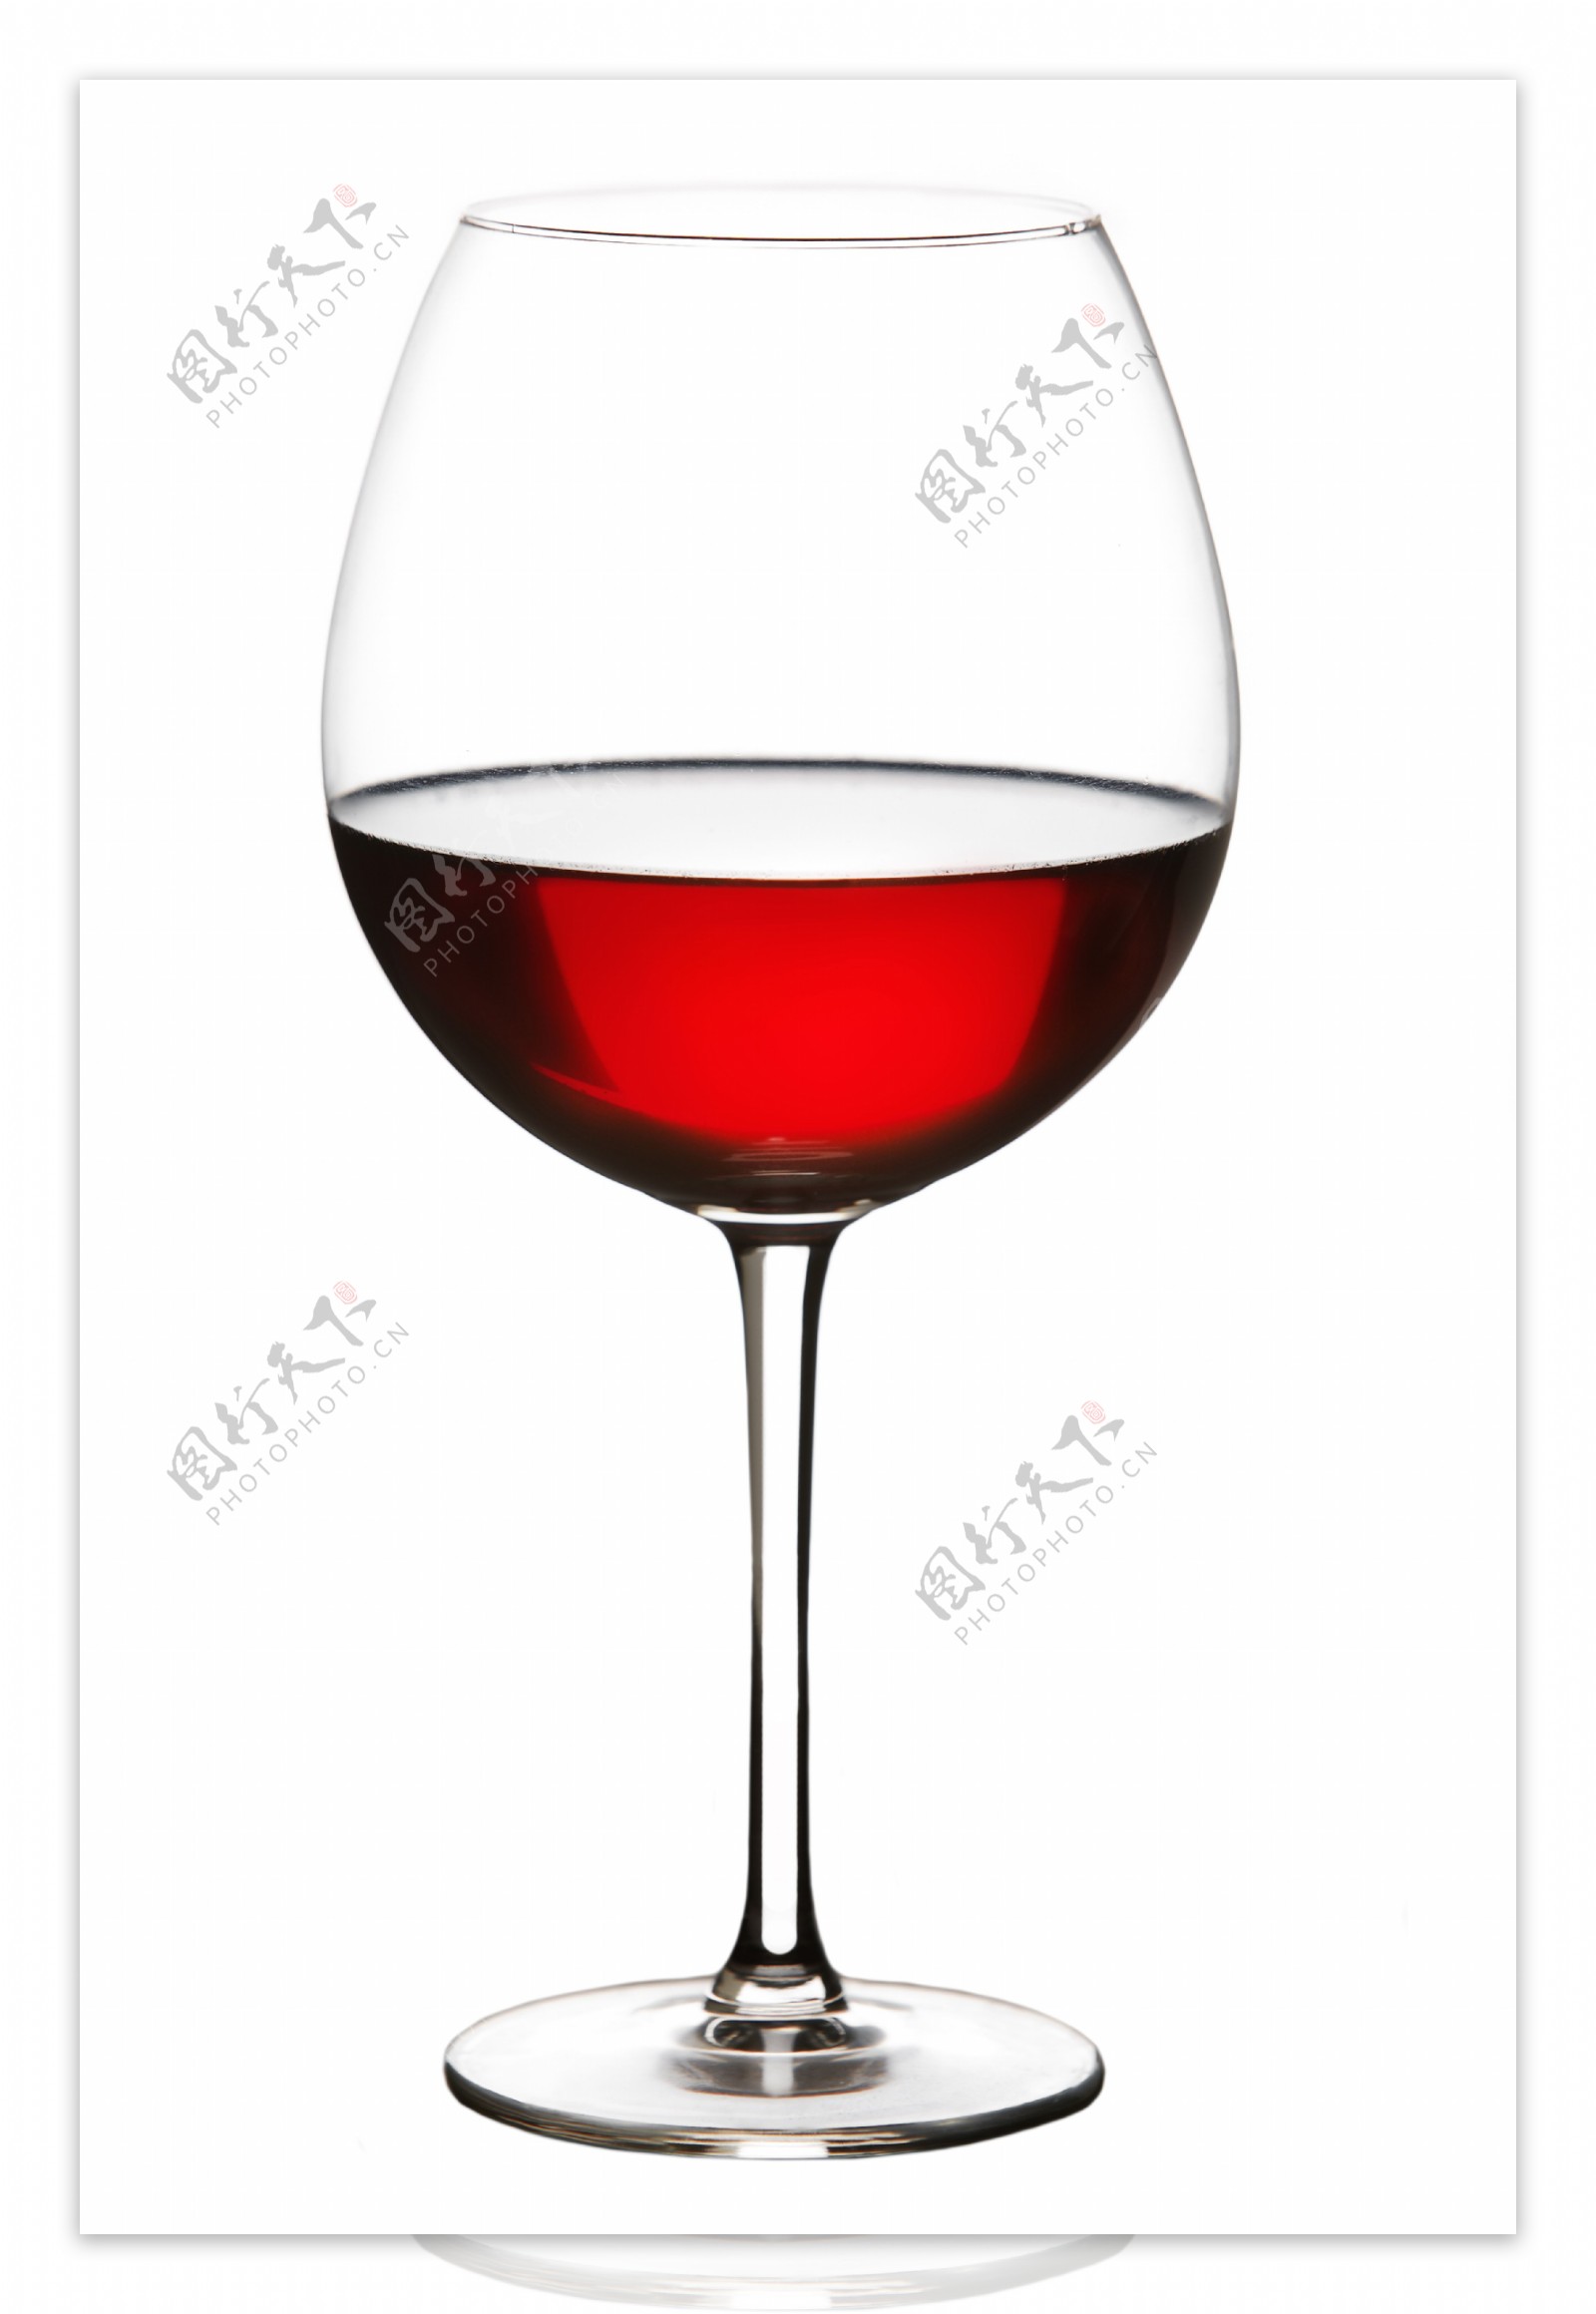 一杯葡萄红酒摄影图片